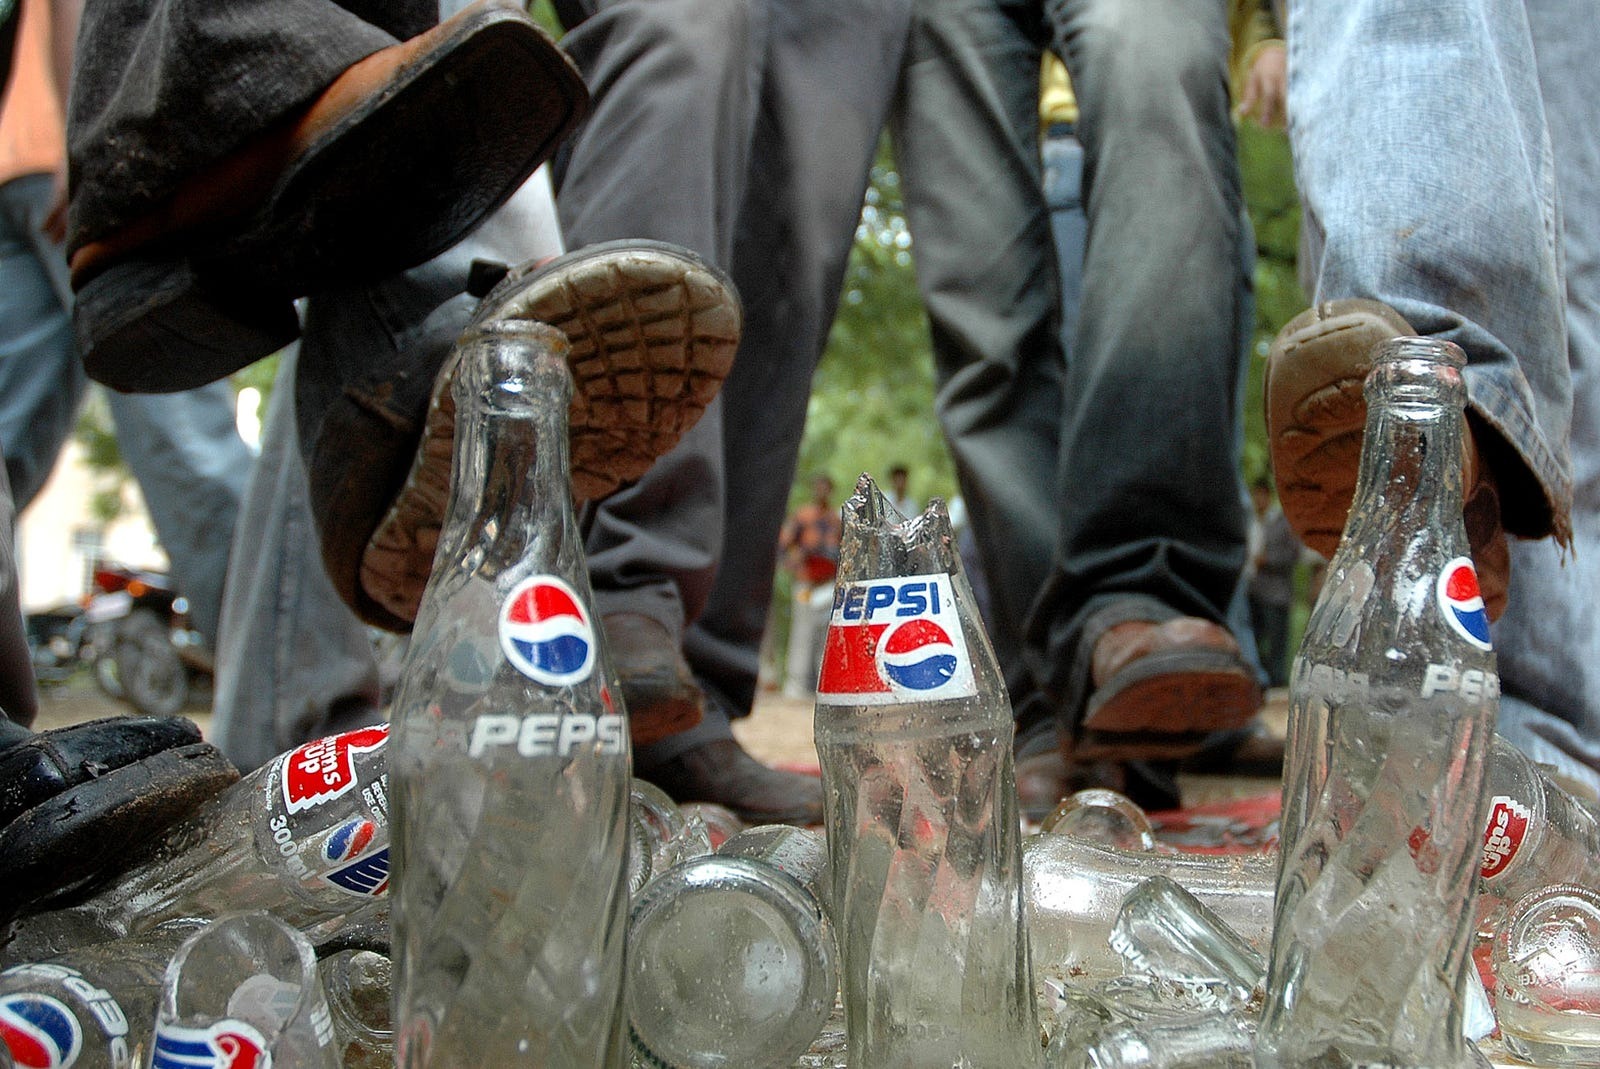 Kicking Pepsi bottle